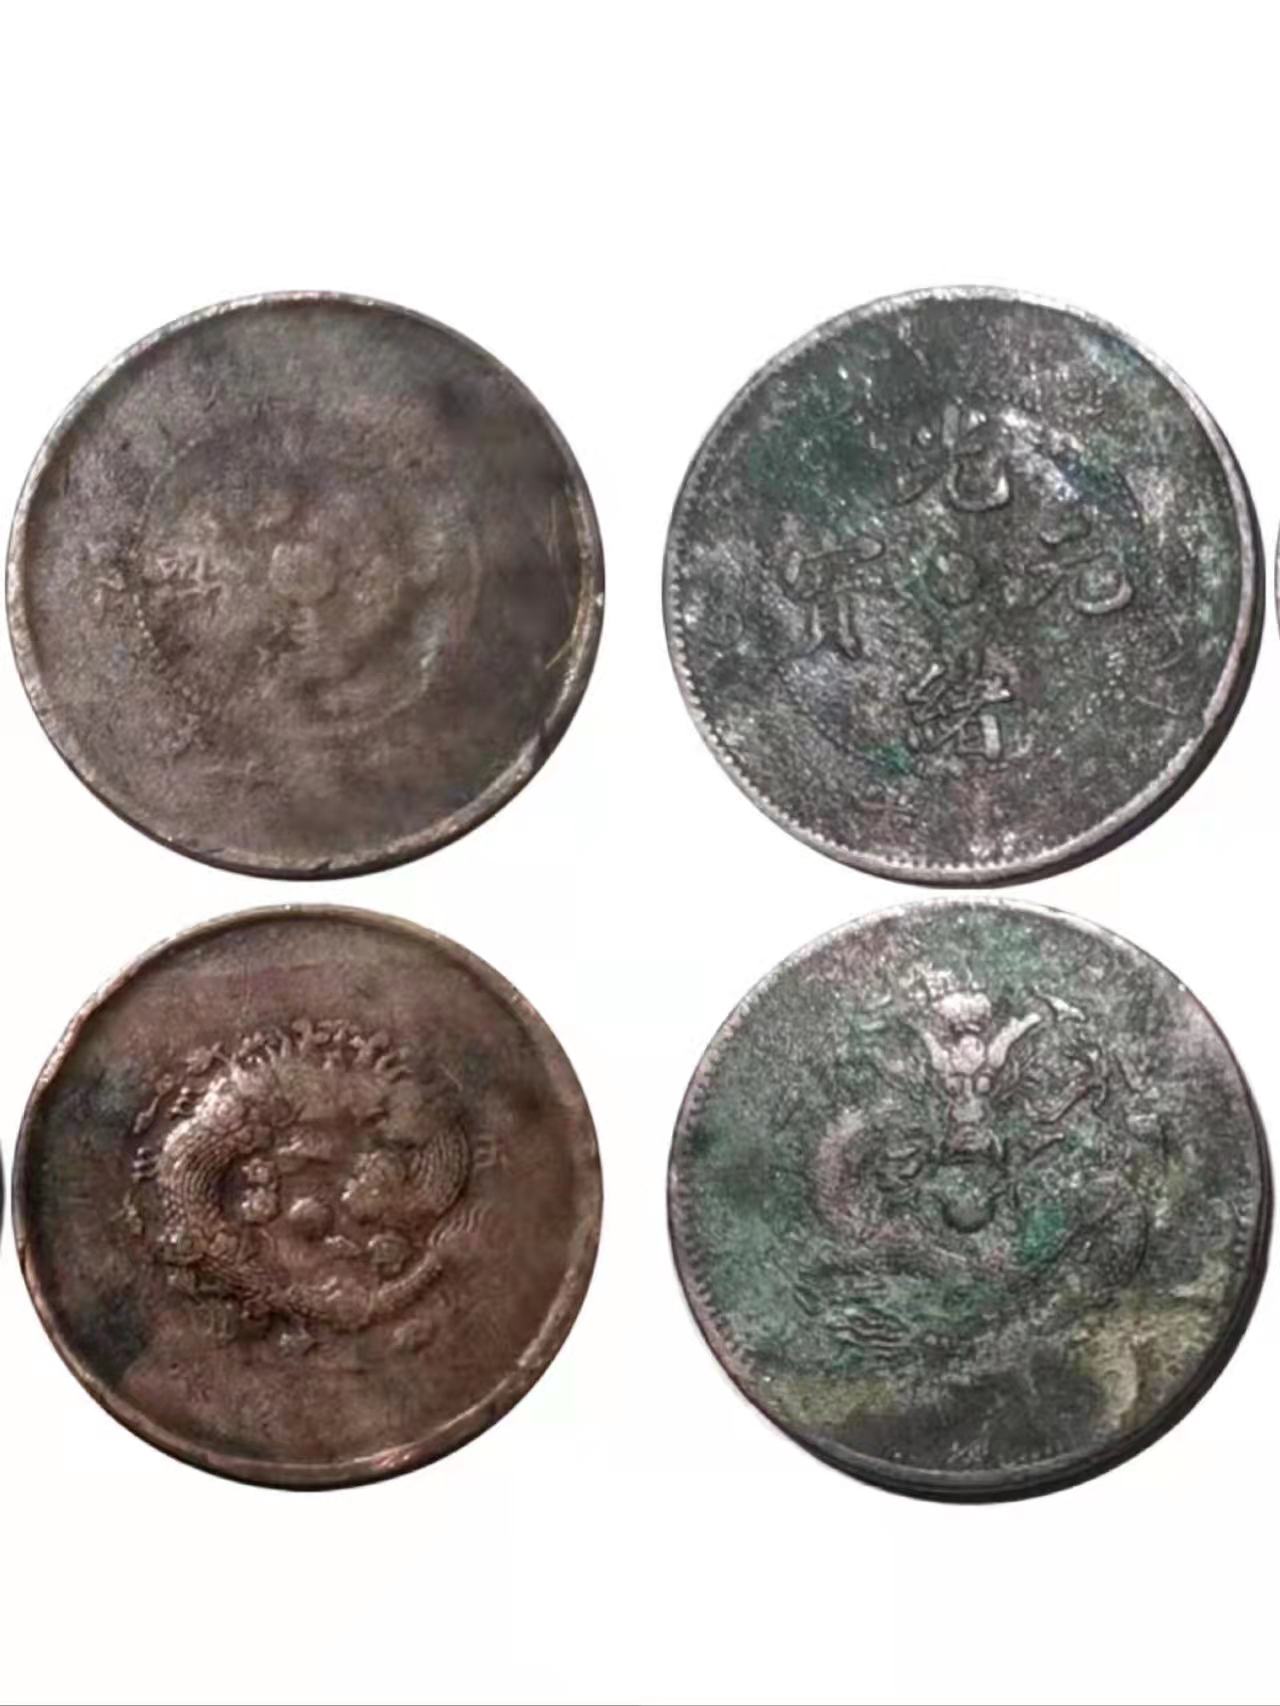 大清铜币和湖北省造光绪元宝两枚一组